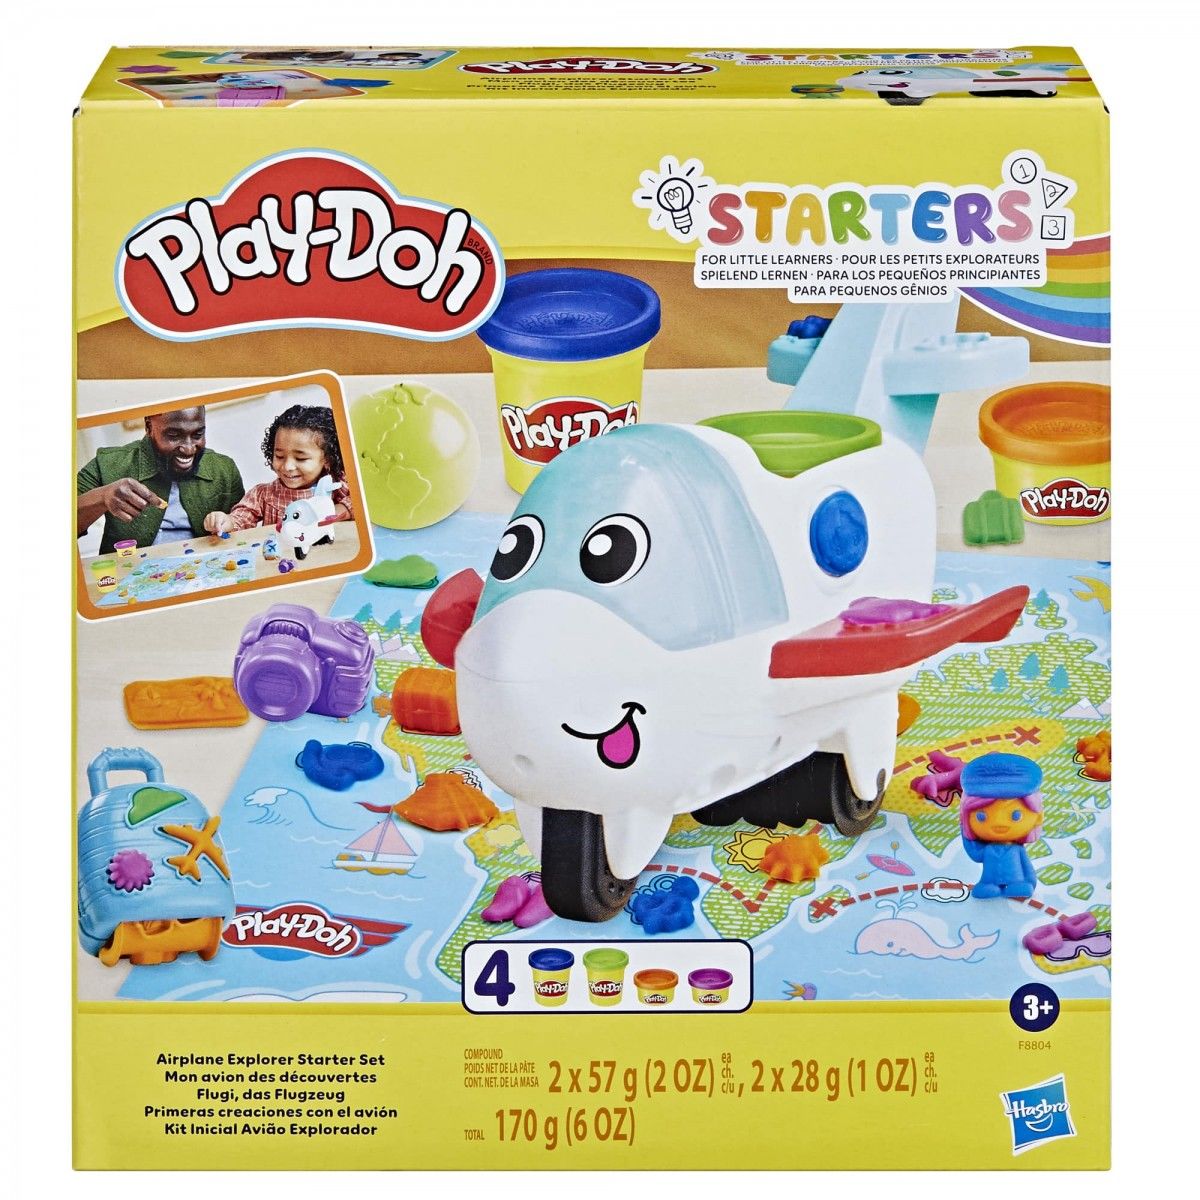 Play Doh Starters Eğlenceli Uçak Oyunu F8804